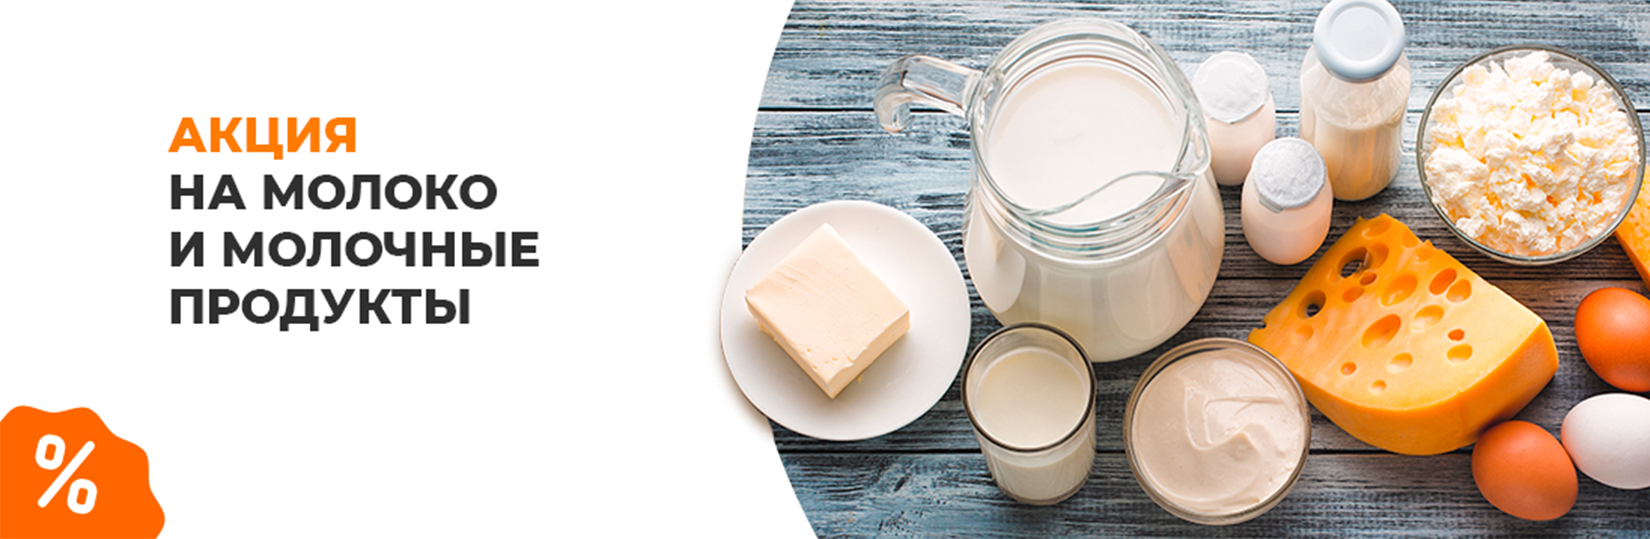 Акция на молоко и молочные продукты